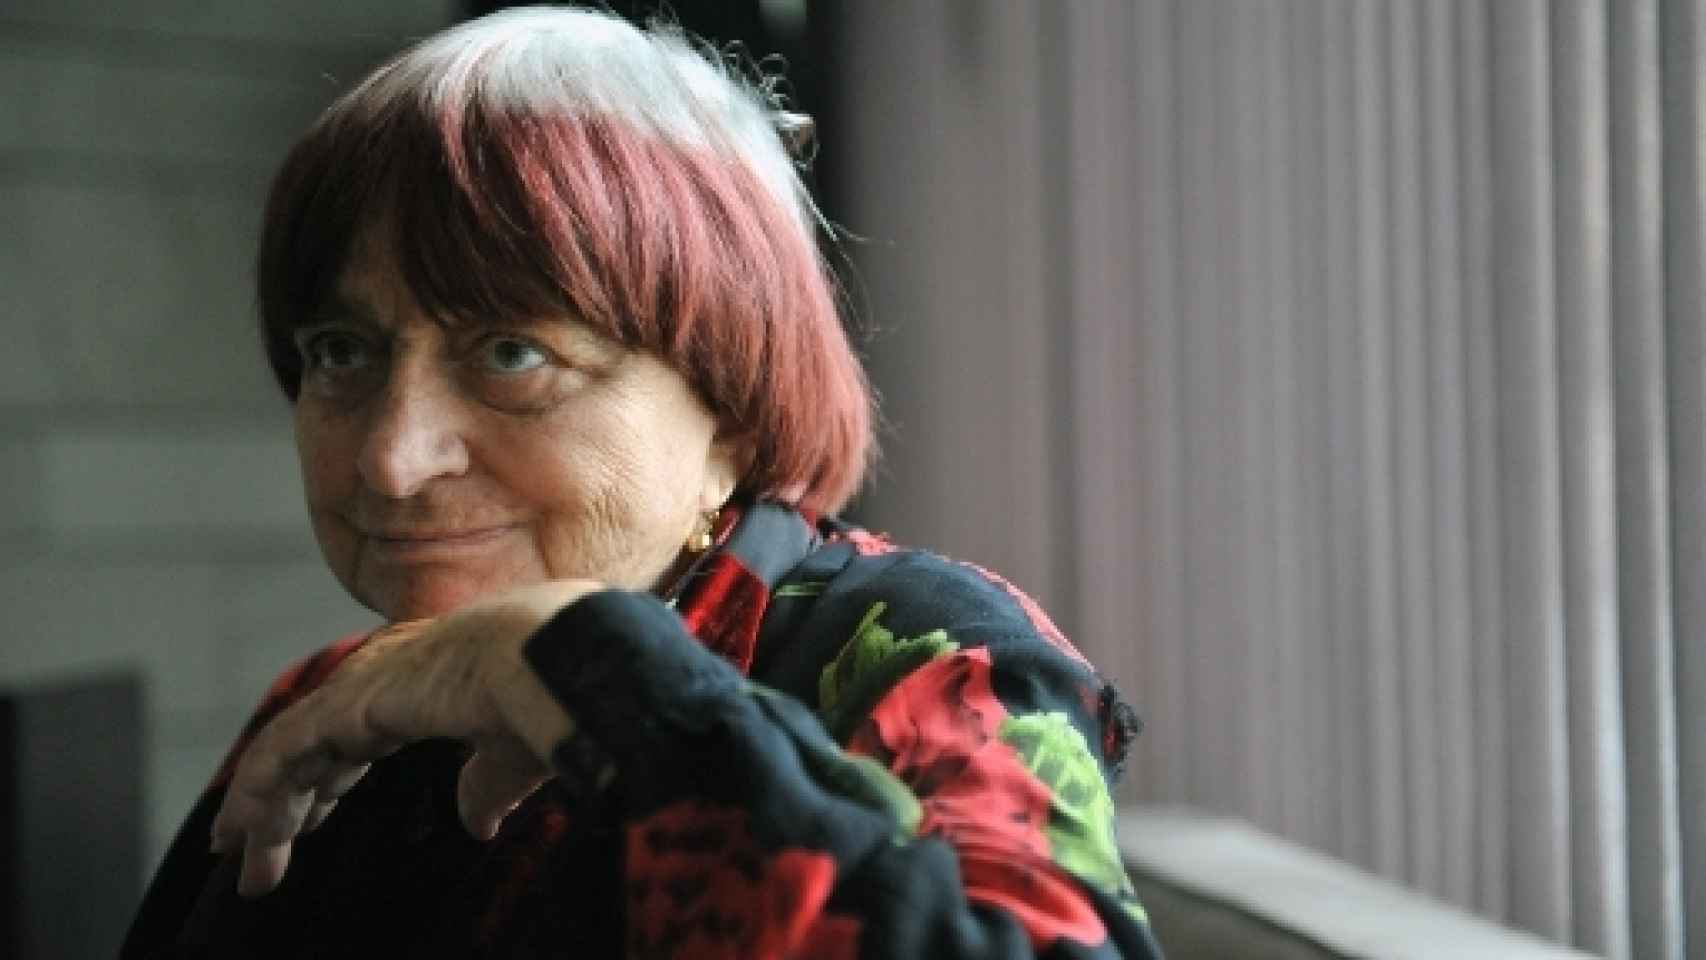 Image: Agnès Varda: El fin del cine no sucederá pronto, no seamos agoreros